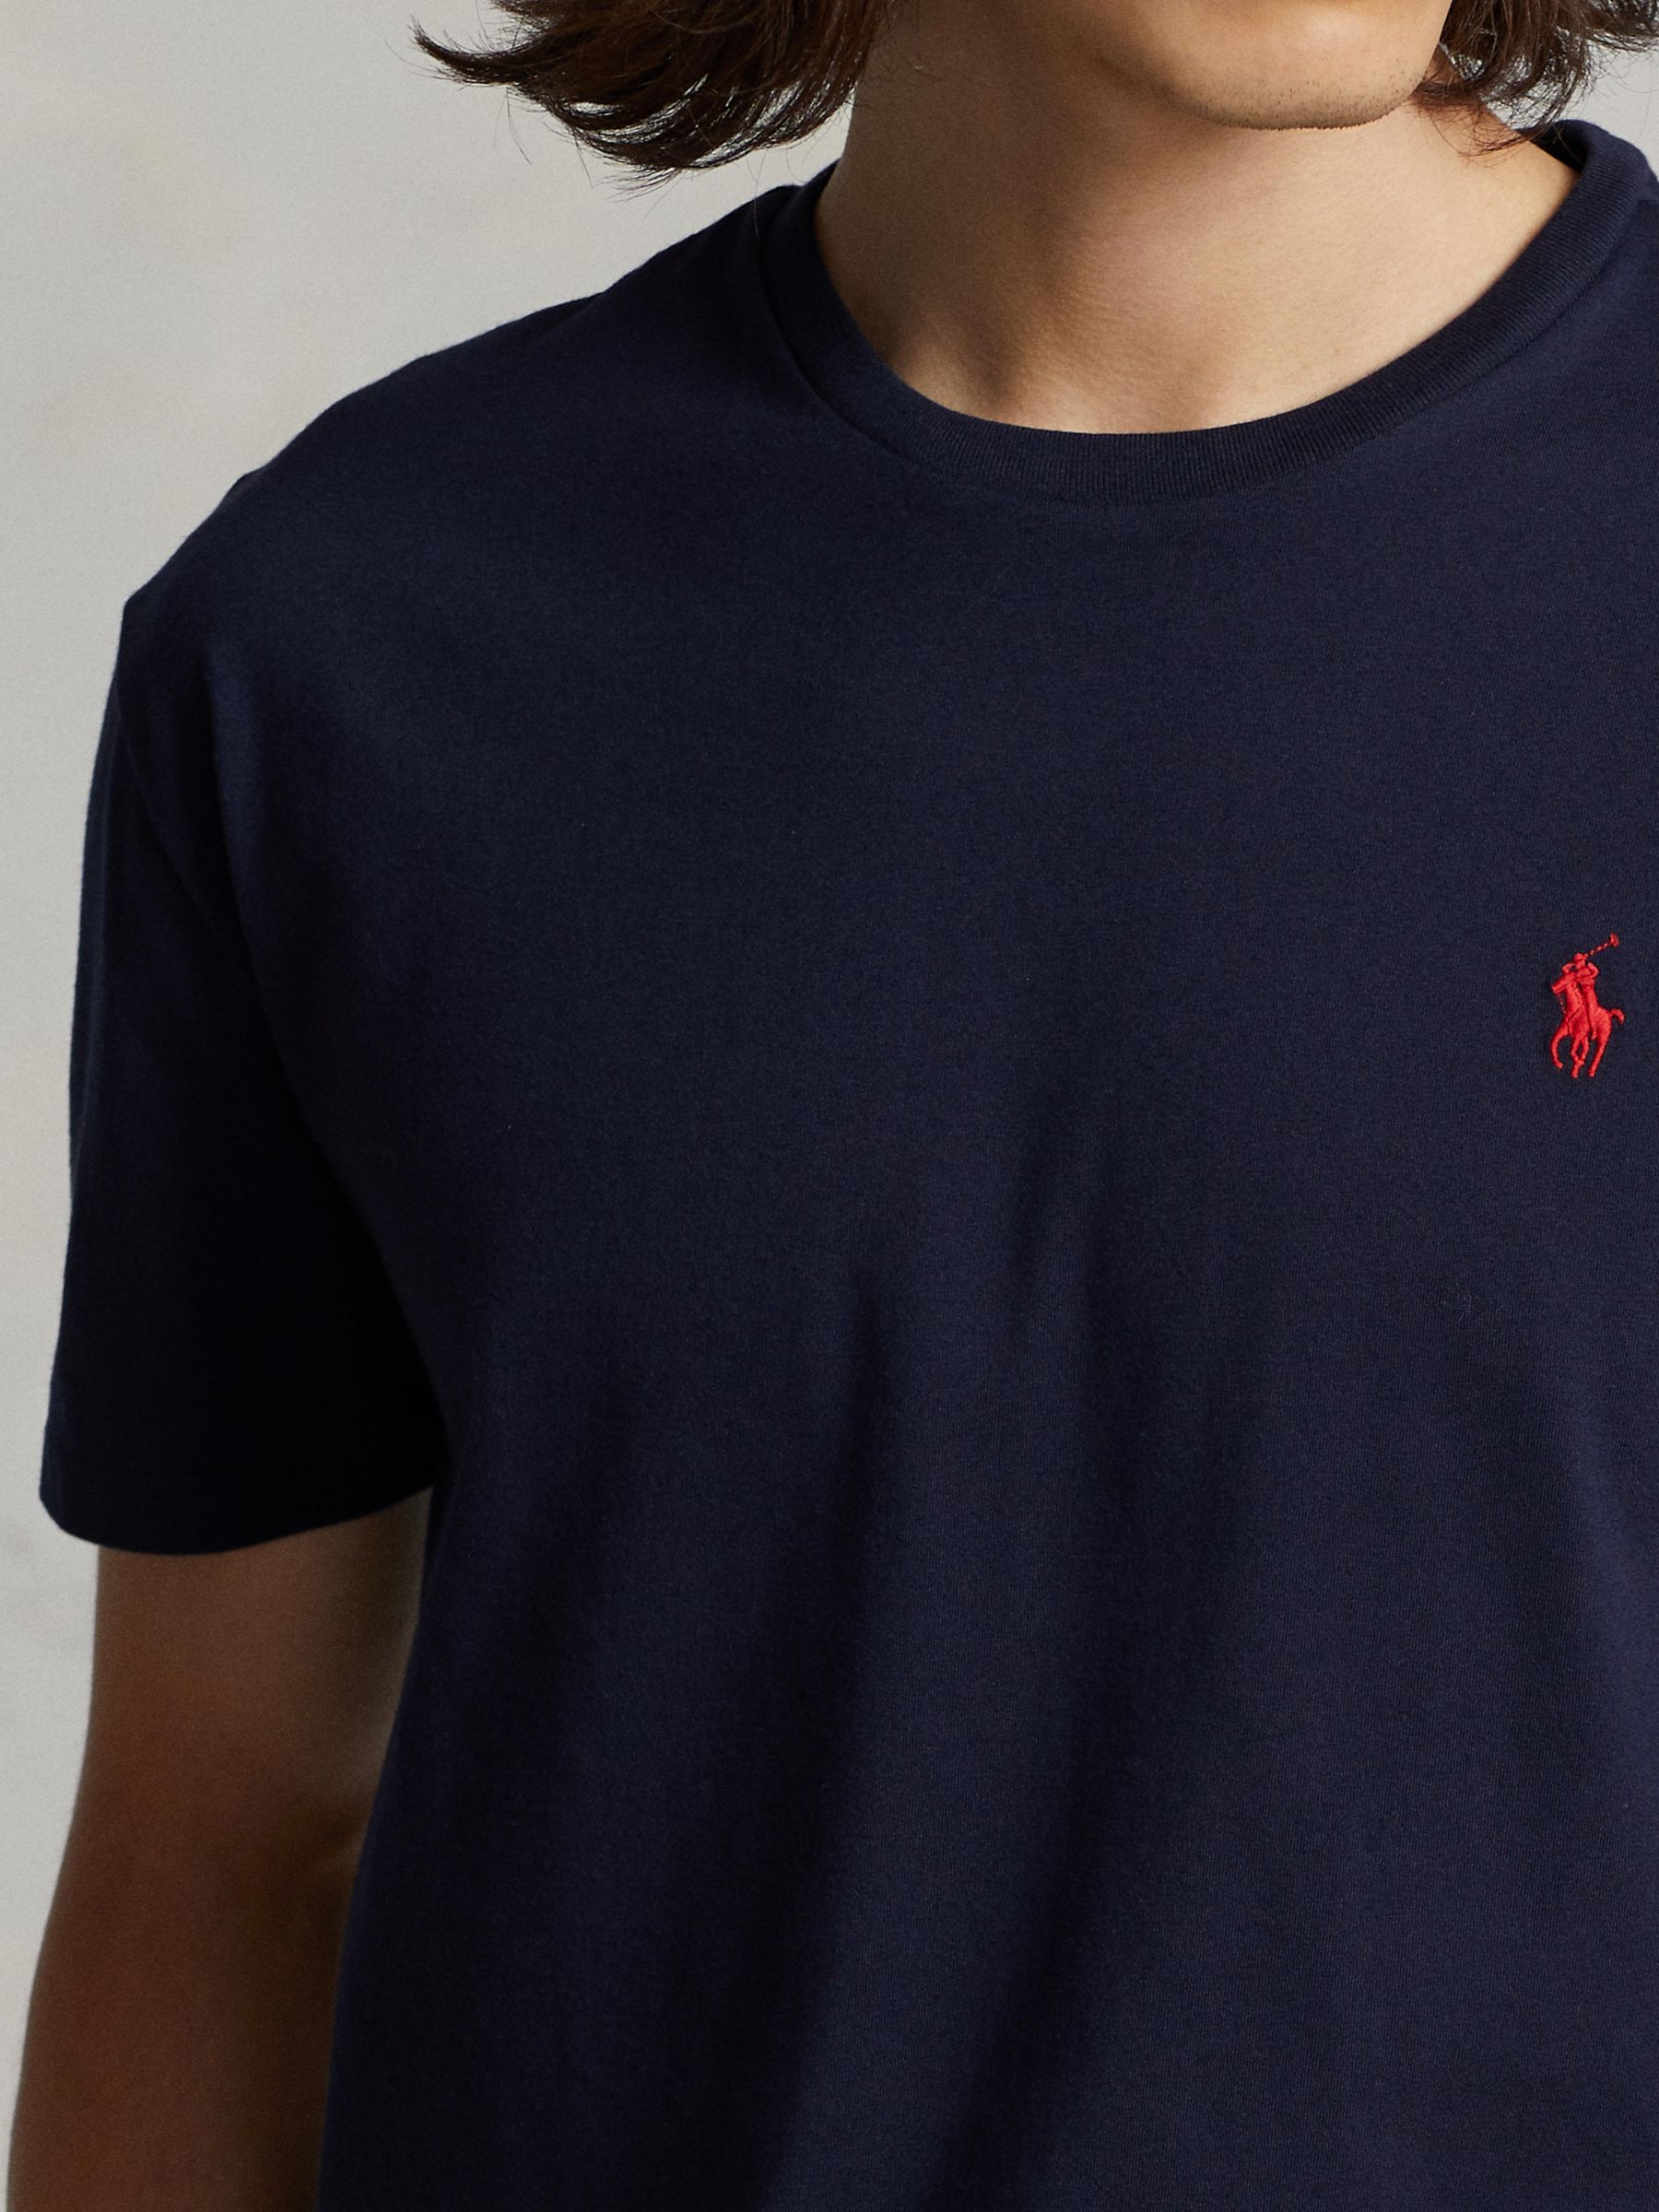 Polo Ralph Lauren Short Sleeve Custom Fit Crew Neck T-Shirt, Ink, XXL